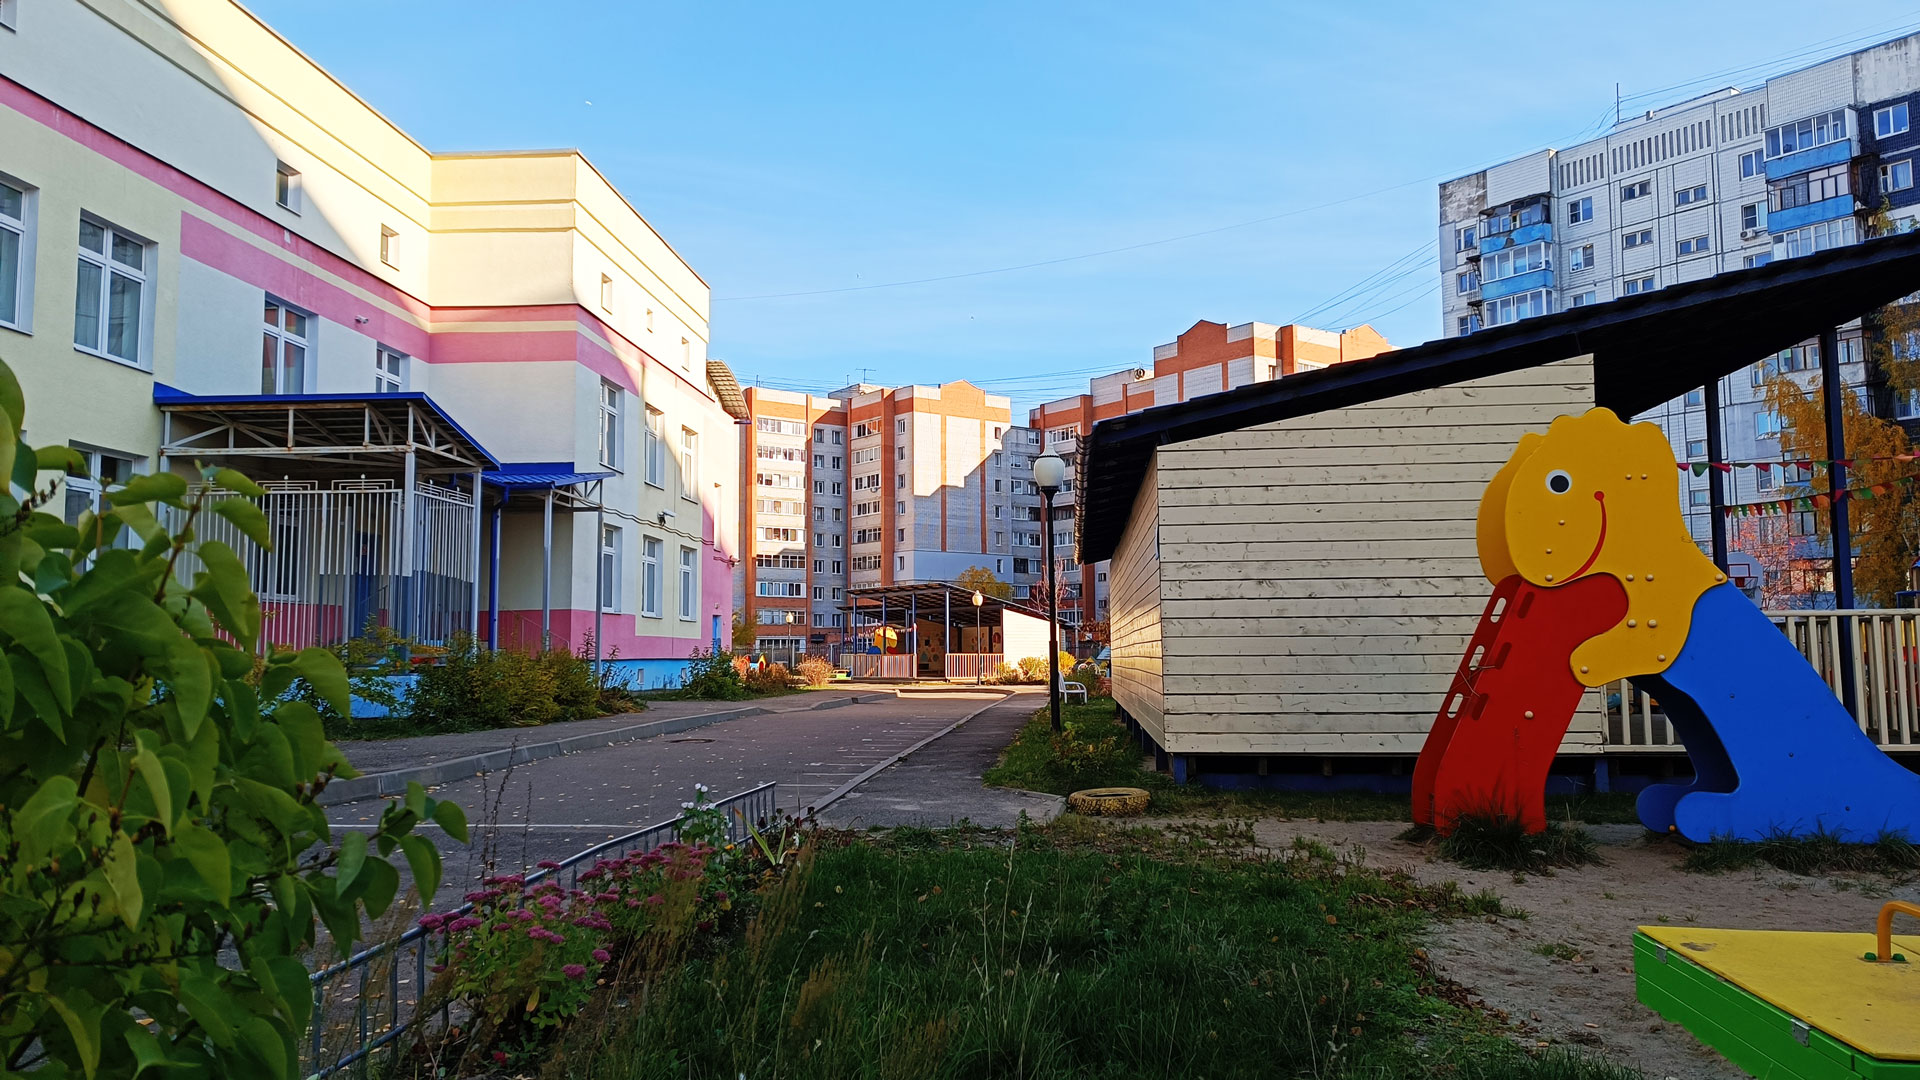 Детский сад 228 Ярославль: общий вид здания.